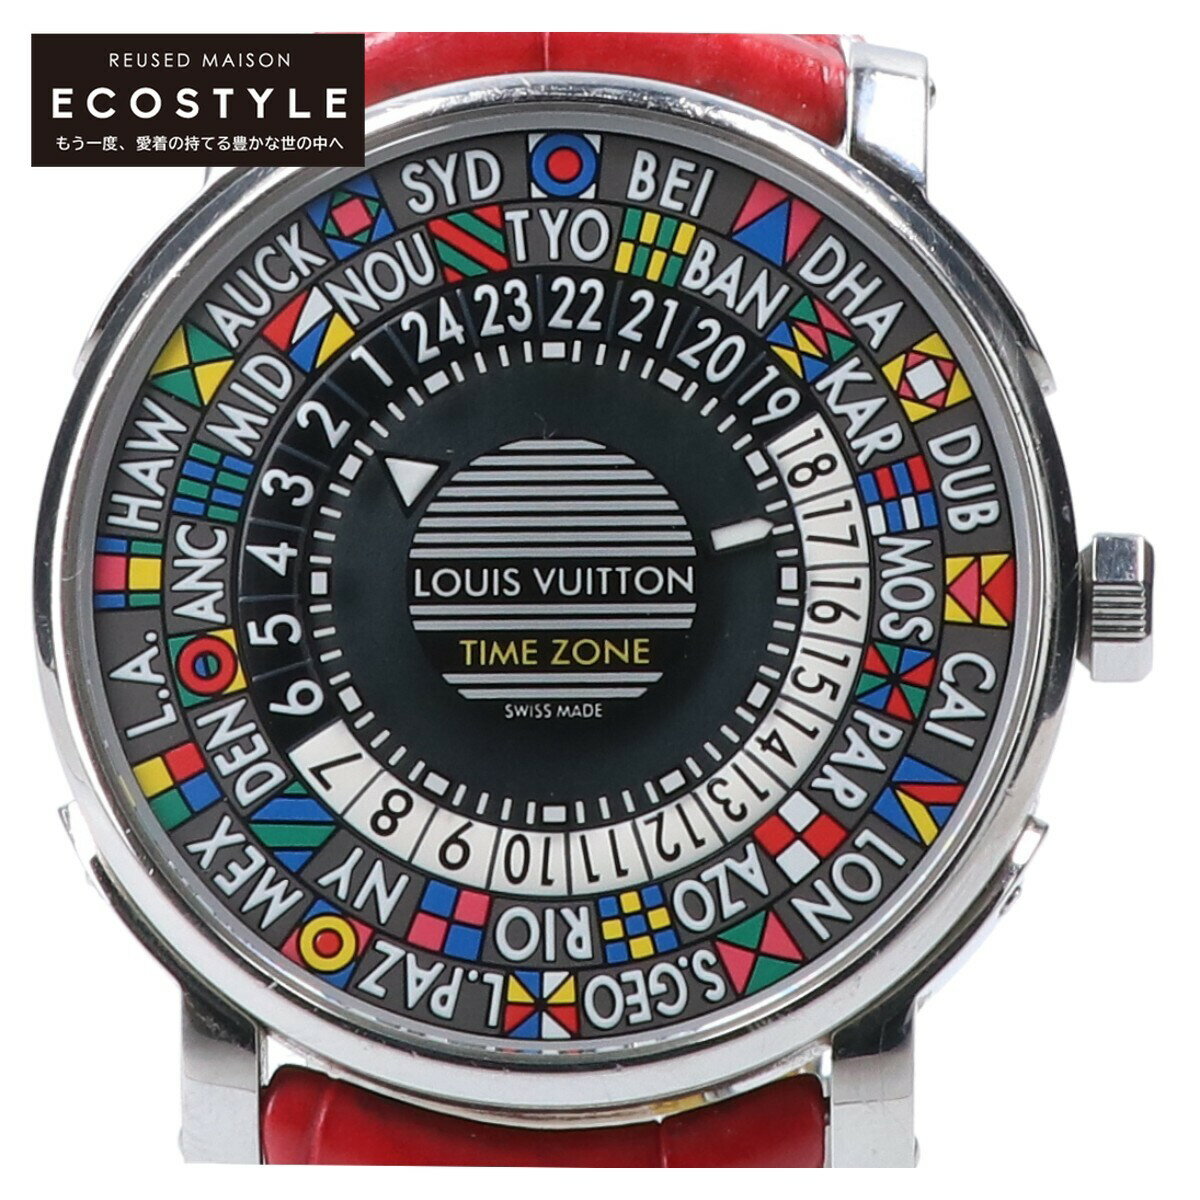 LOUIS VUITTON ルイヴィトン Q5D20 エスカル タイムゾーン ワールドタイム 自動巻き 腕時計 シルバー/レッド メンズ 【中古】